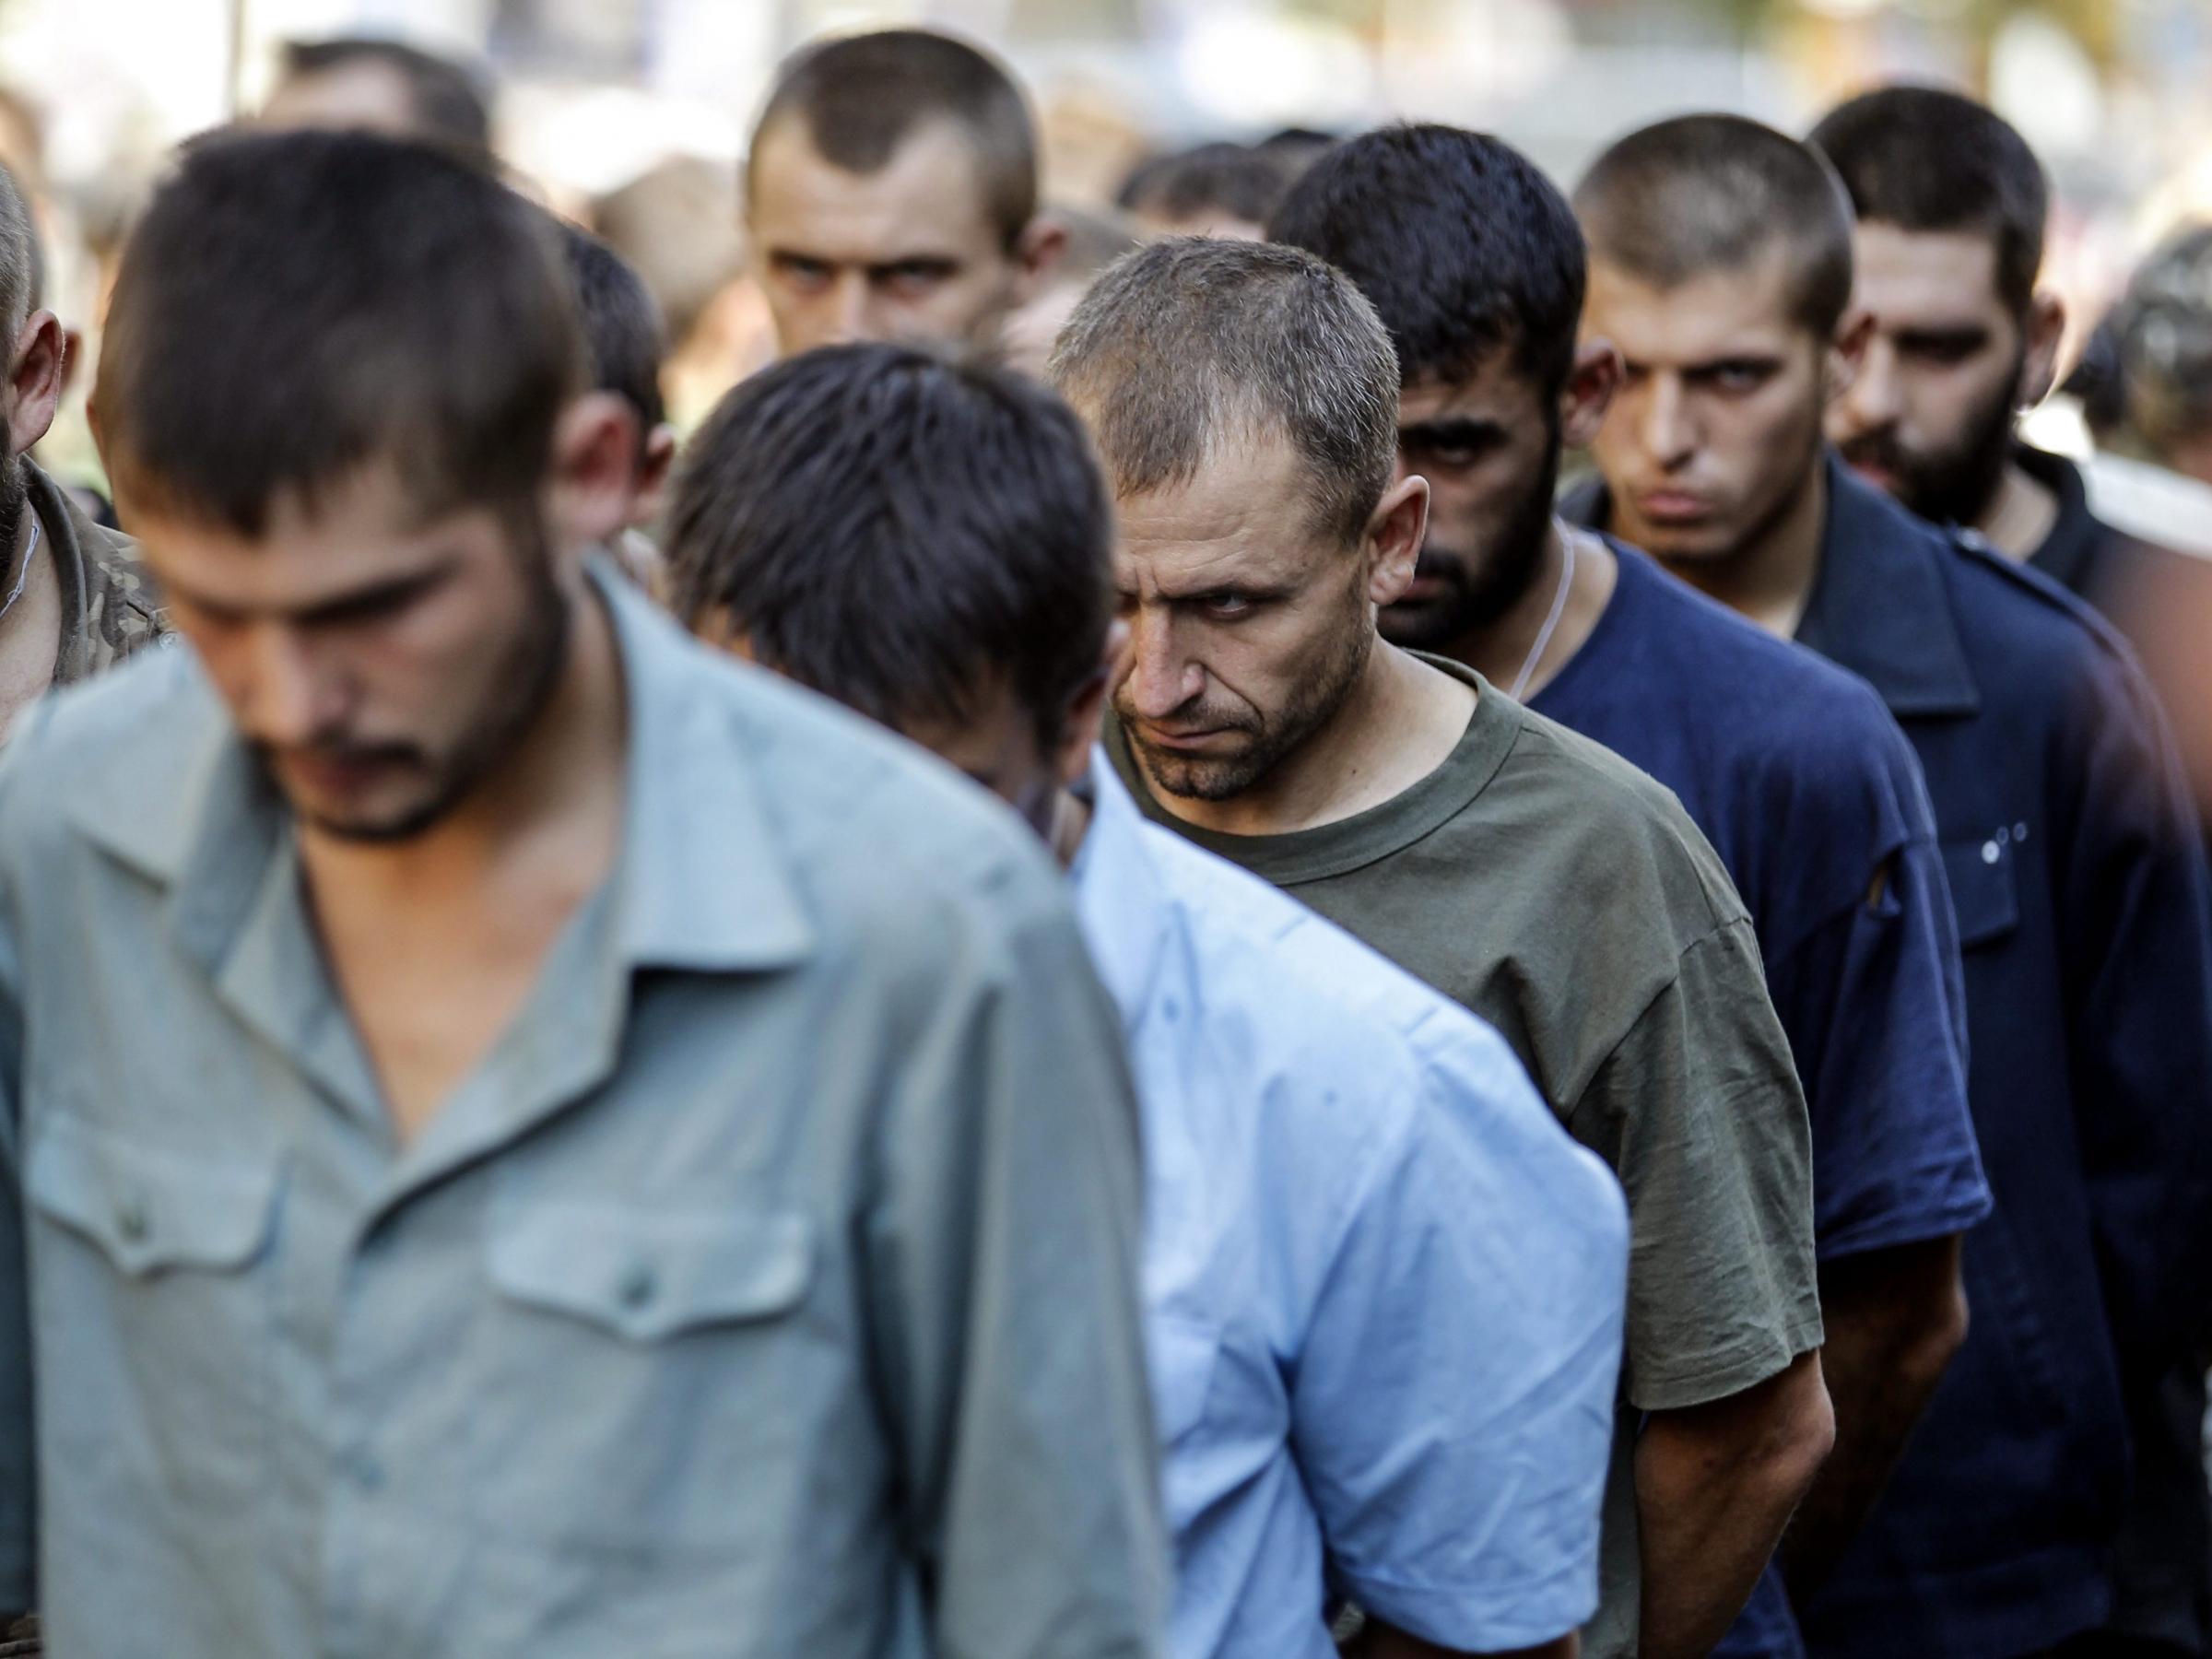 «ДНР» обещает произвести обмен пленных в кратчайшие сроки